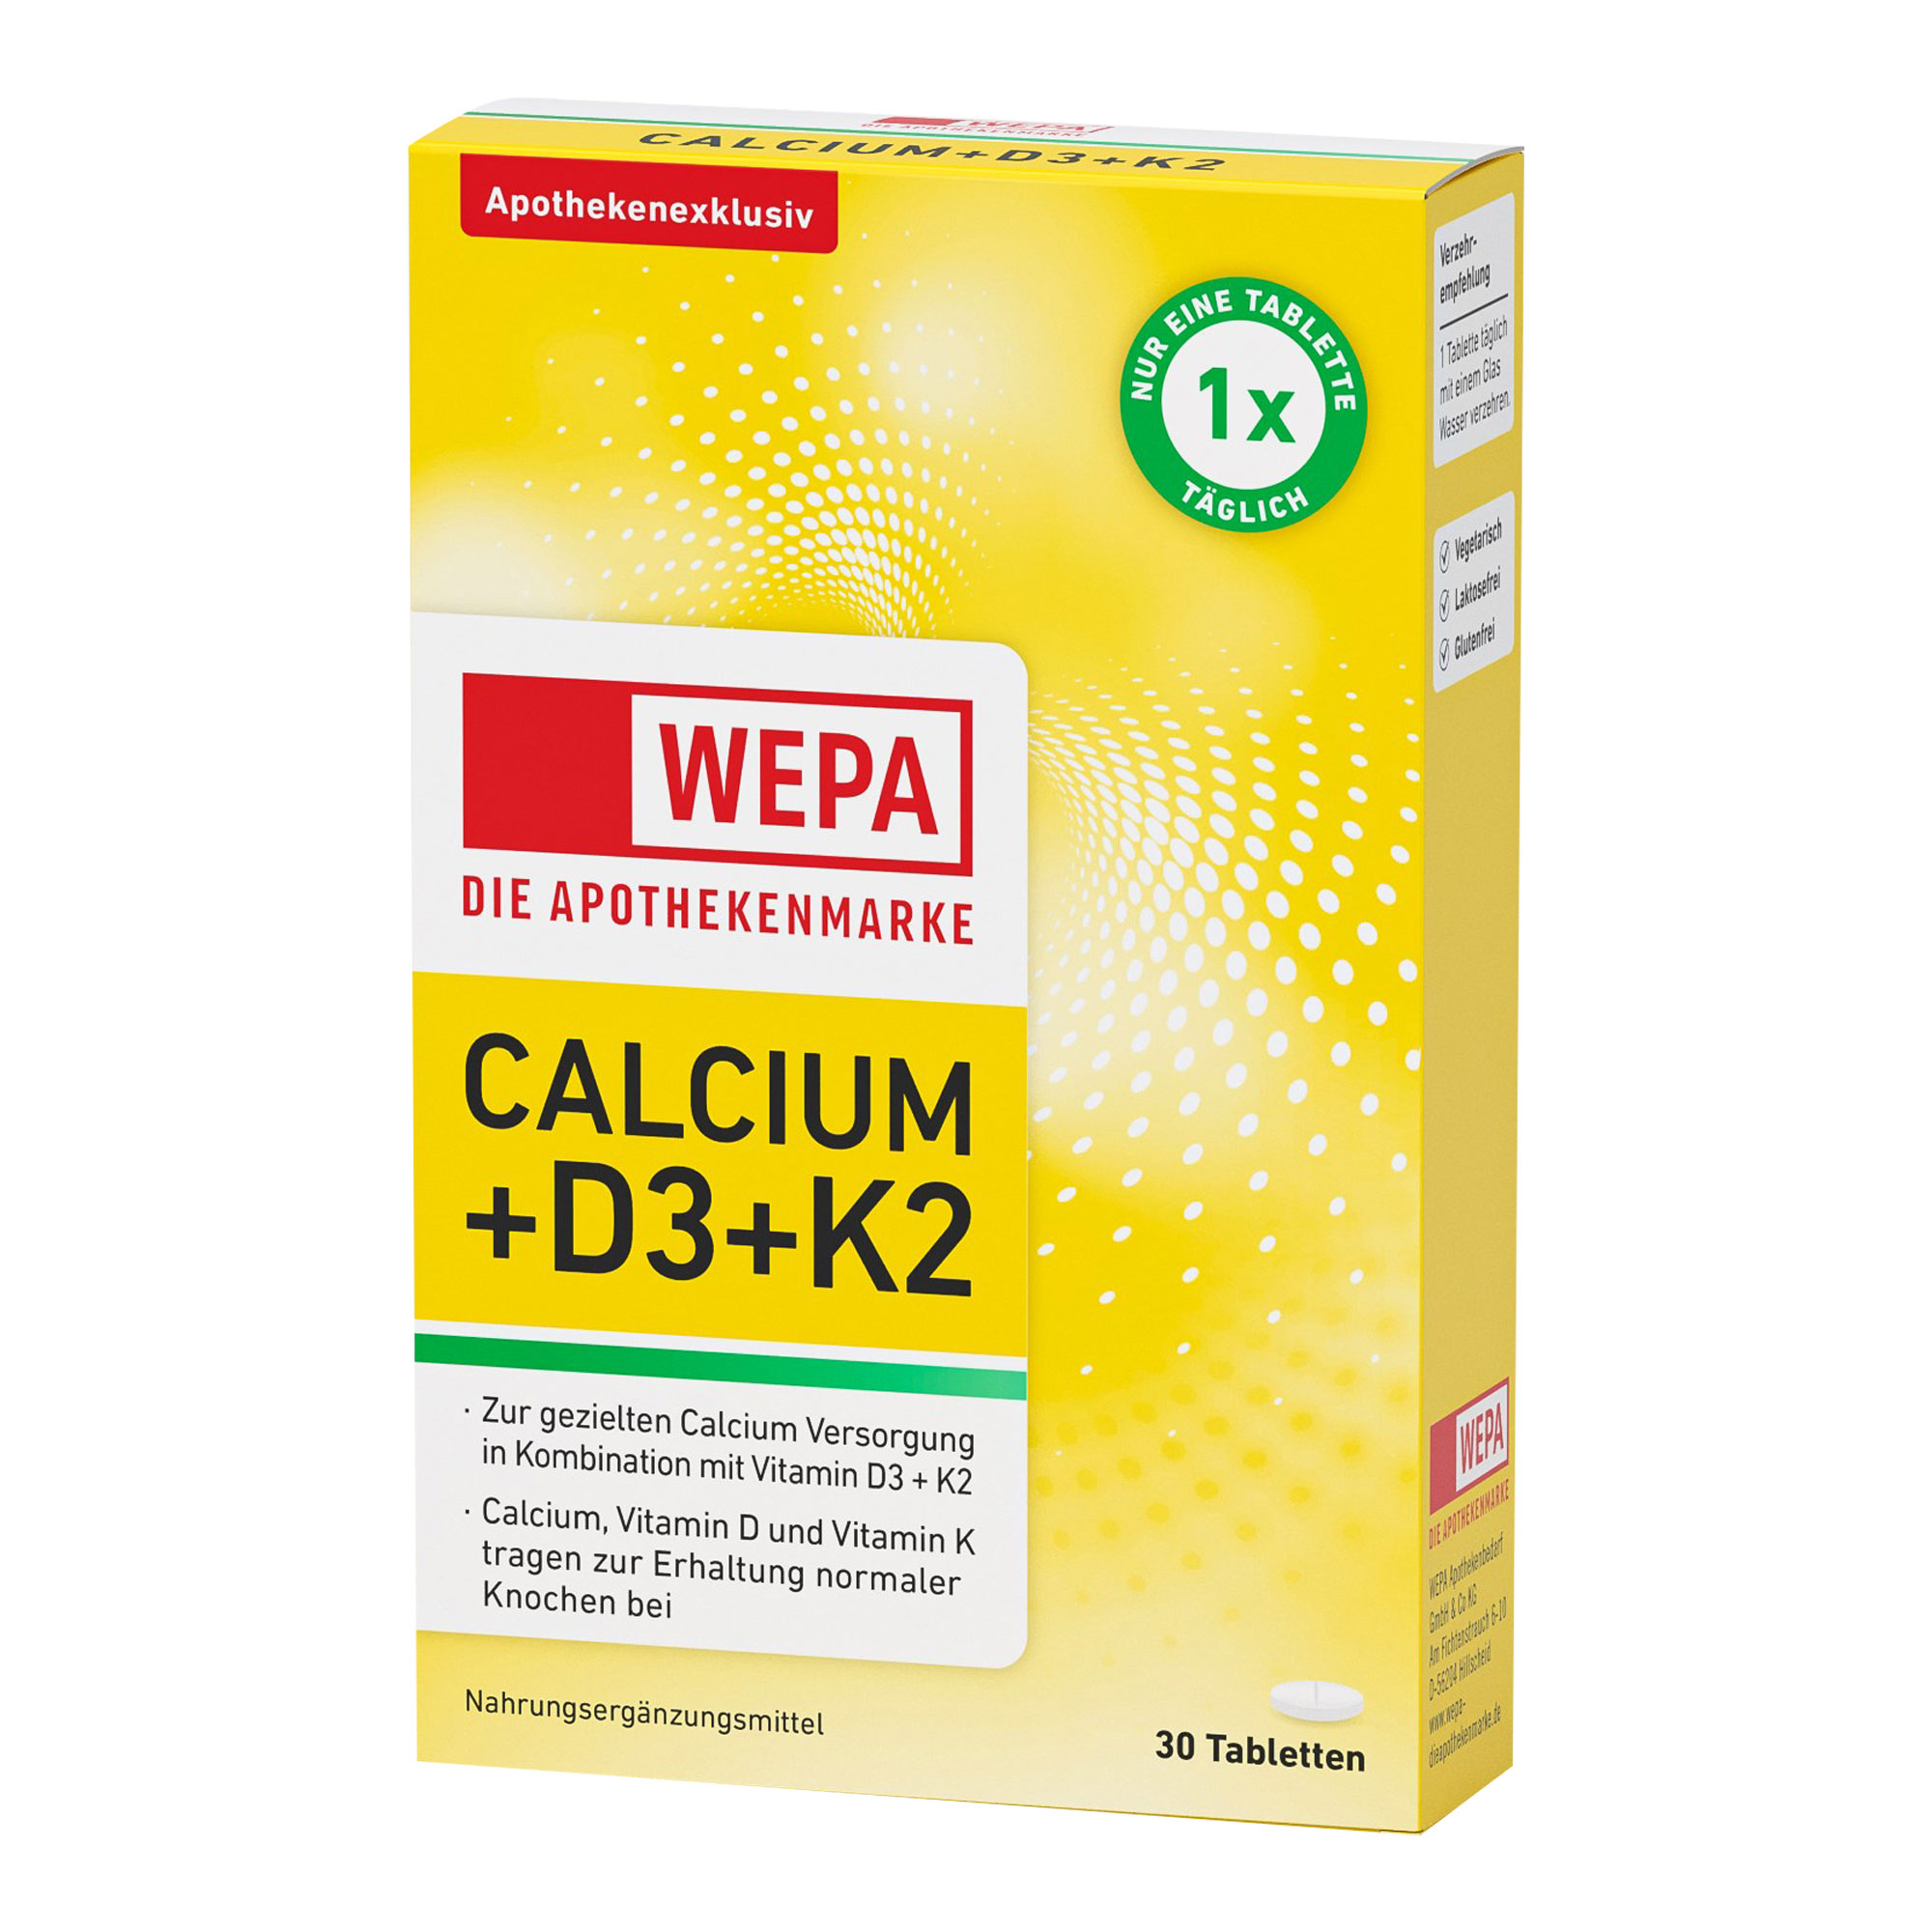 Nahrungsergänzungsmittel mit Calcium, Vitamin D3 und Vitamin K2.